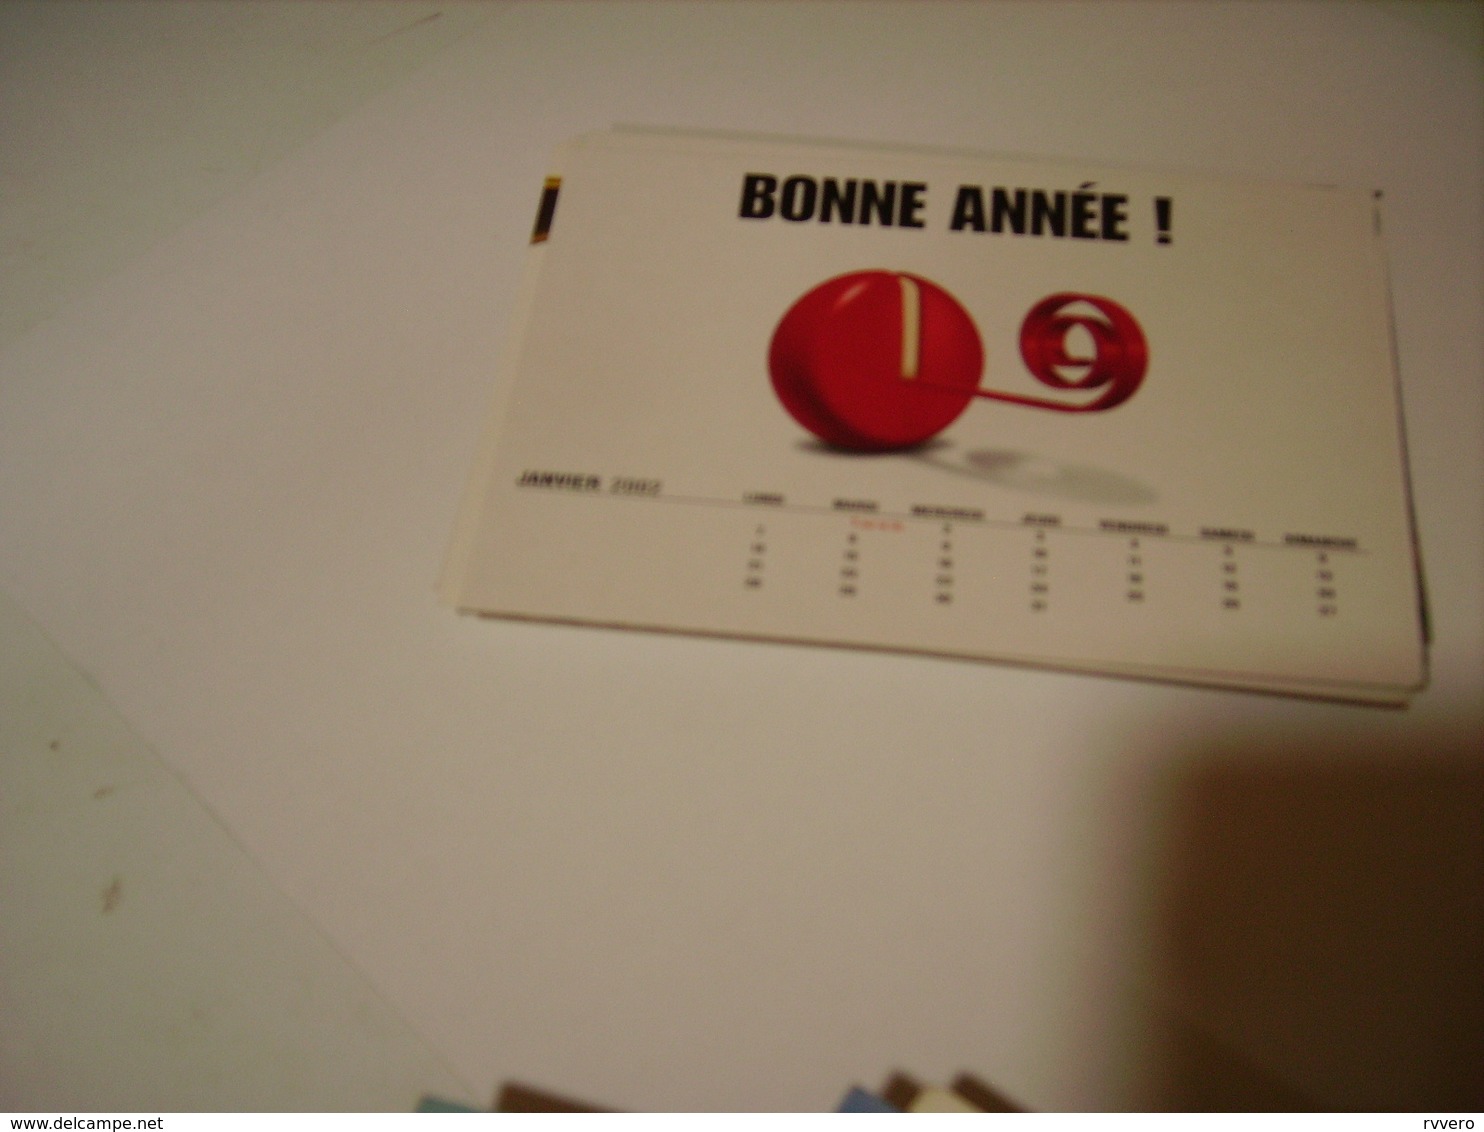 CARTE POSTALE BONNE ANNEE PUBLICITE BABYBEL  JANVIER  2002 - Publicité